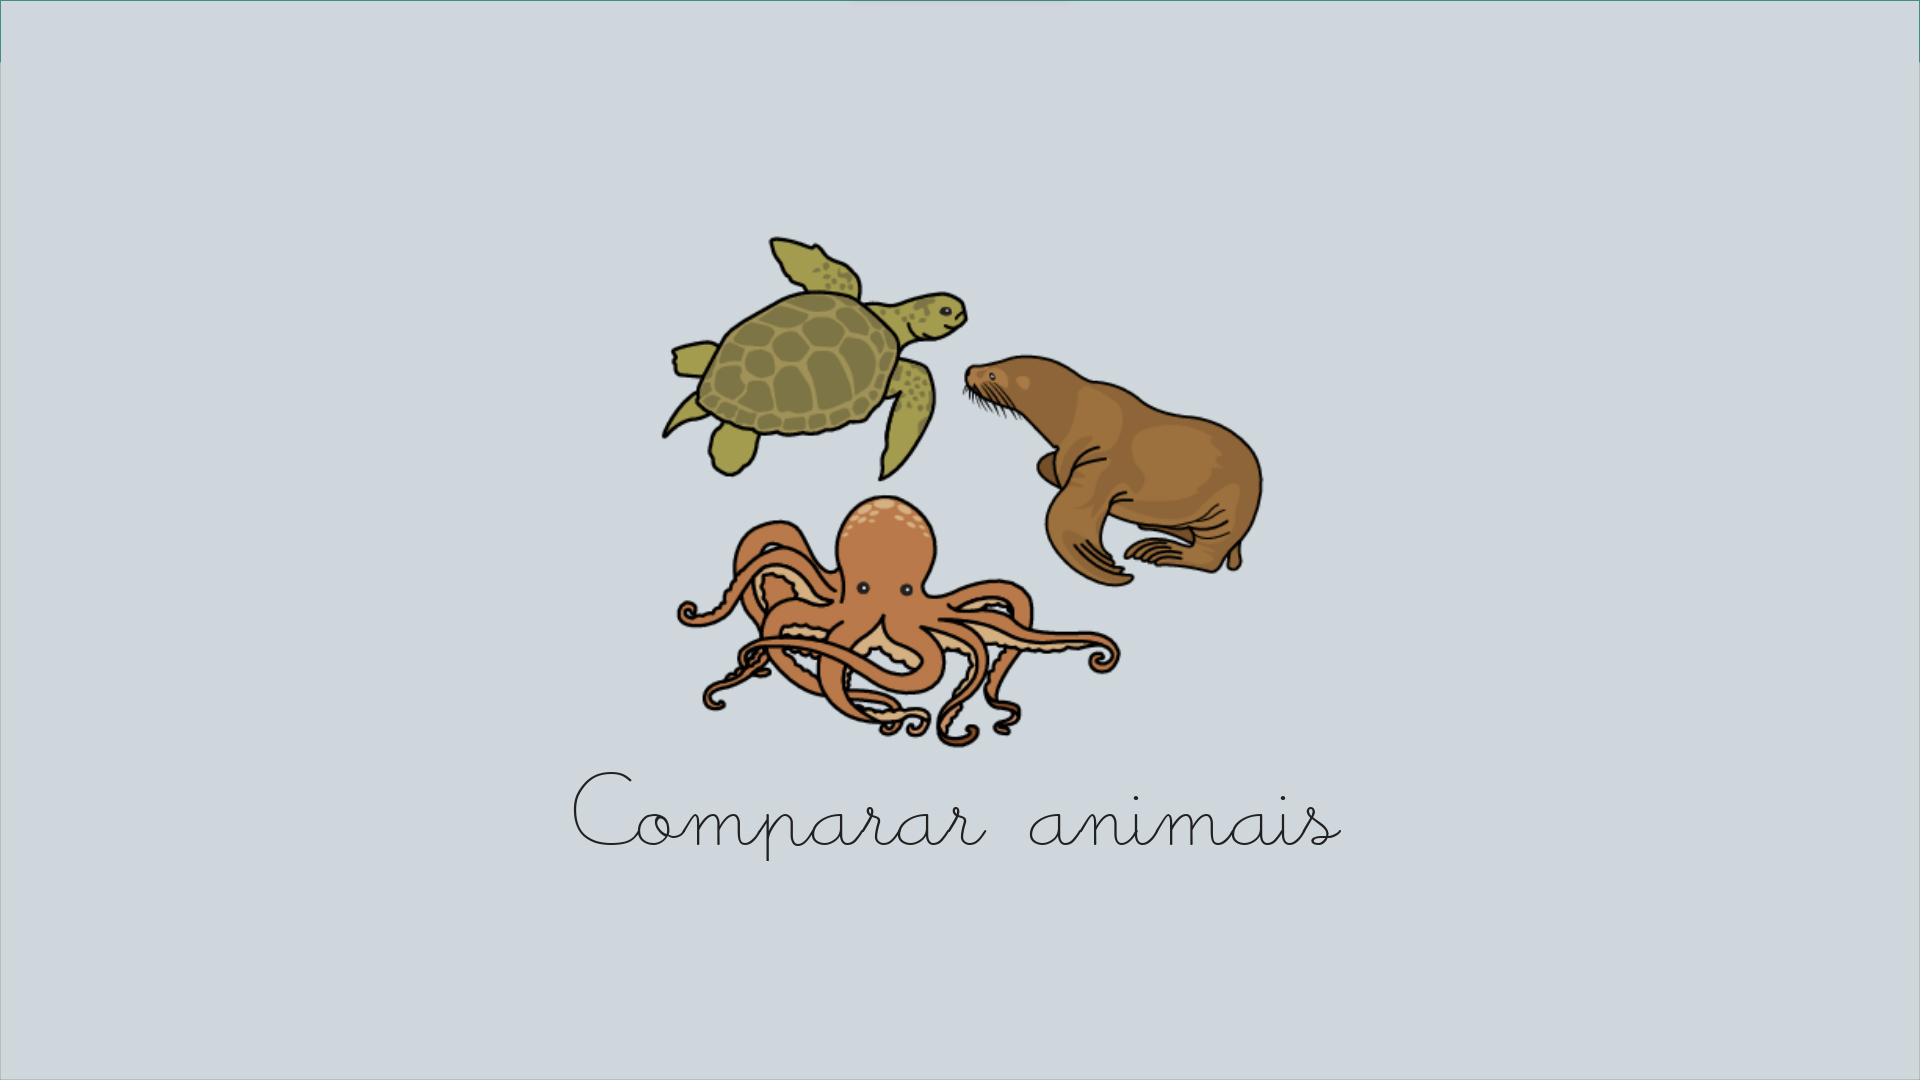 Comparar animales (Portugués)